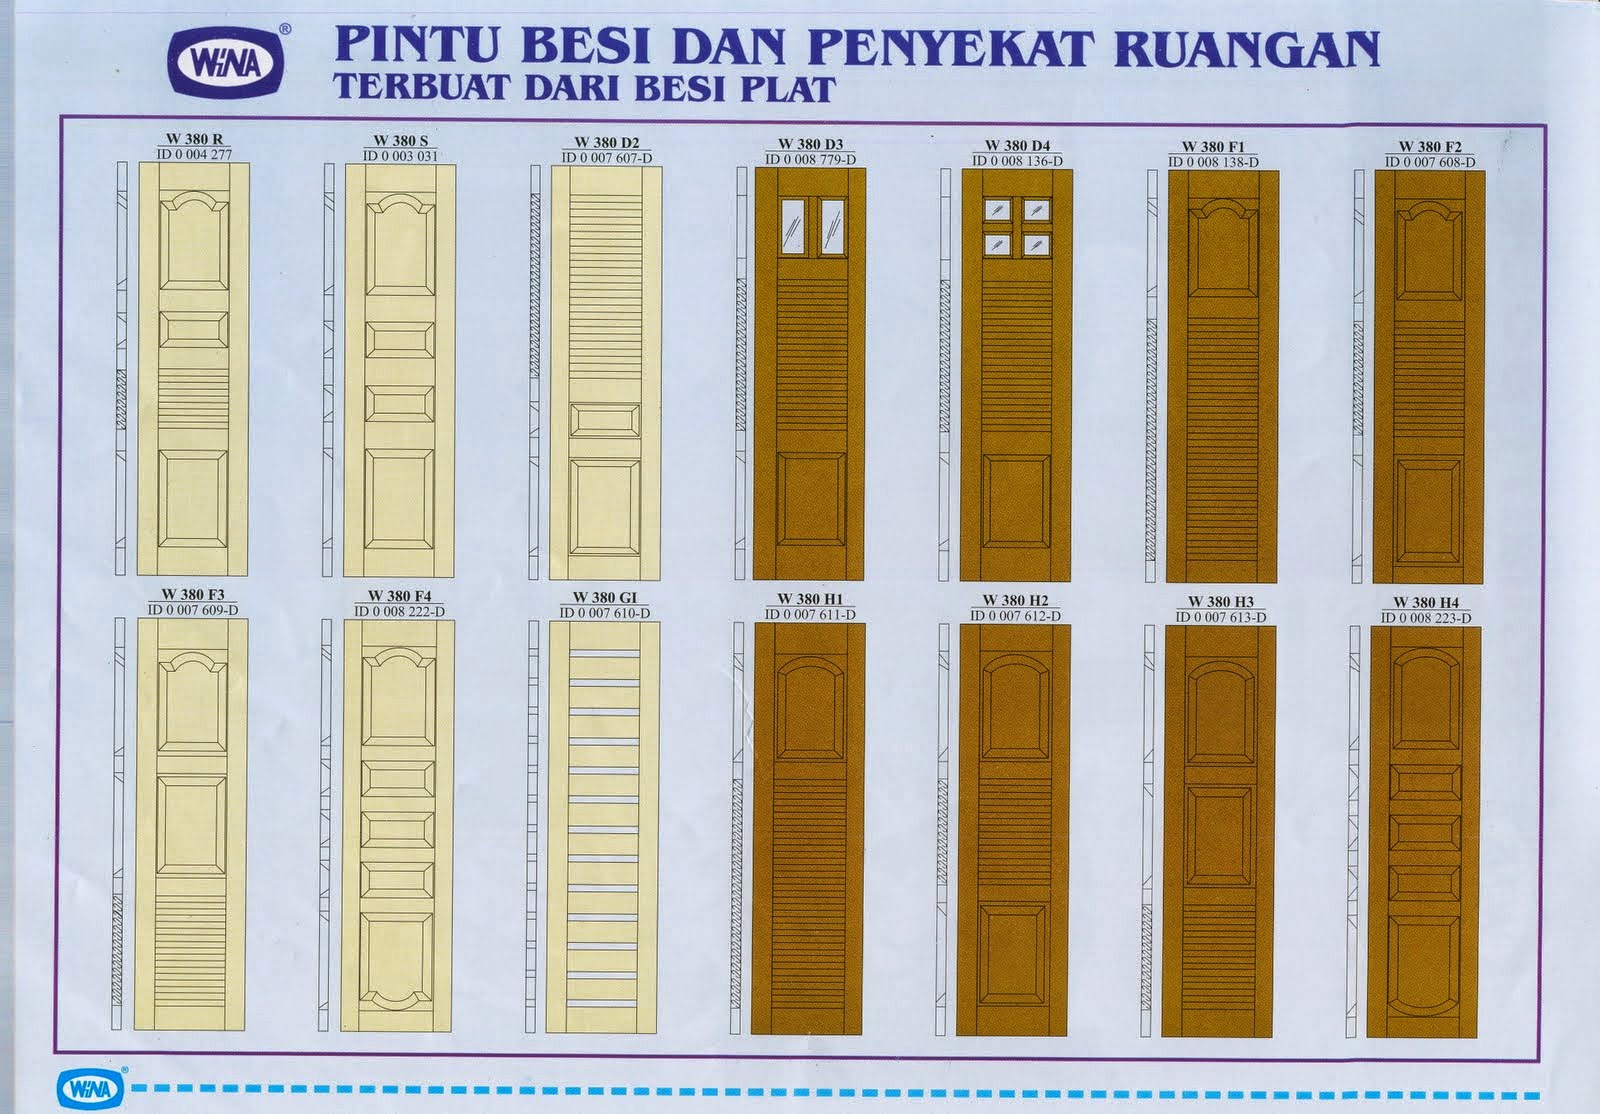  PINTU BESI TUNGGAL KUPU TARUNG SECURITY DOOR PUSAT 